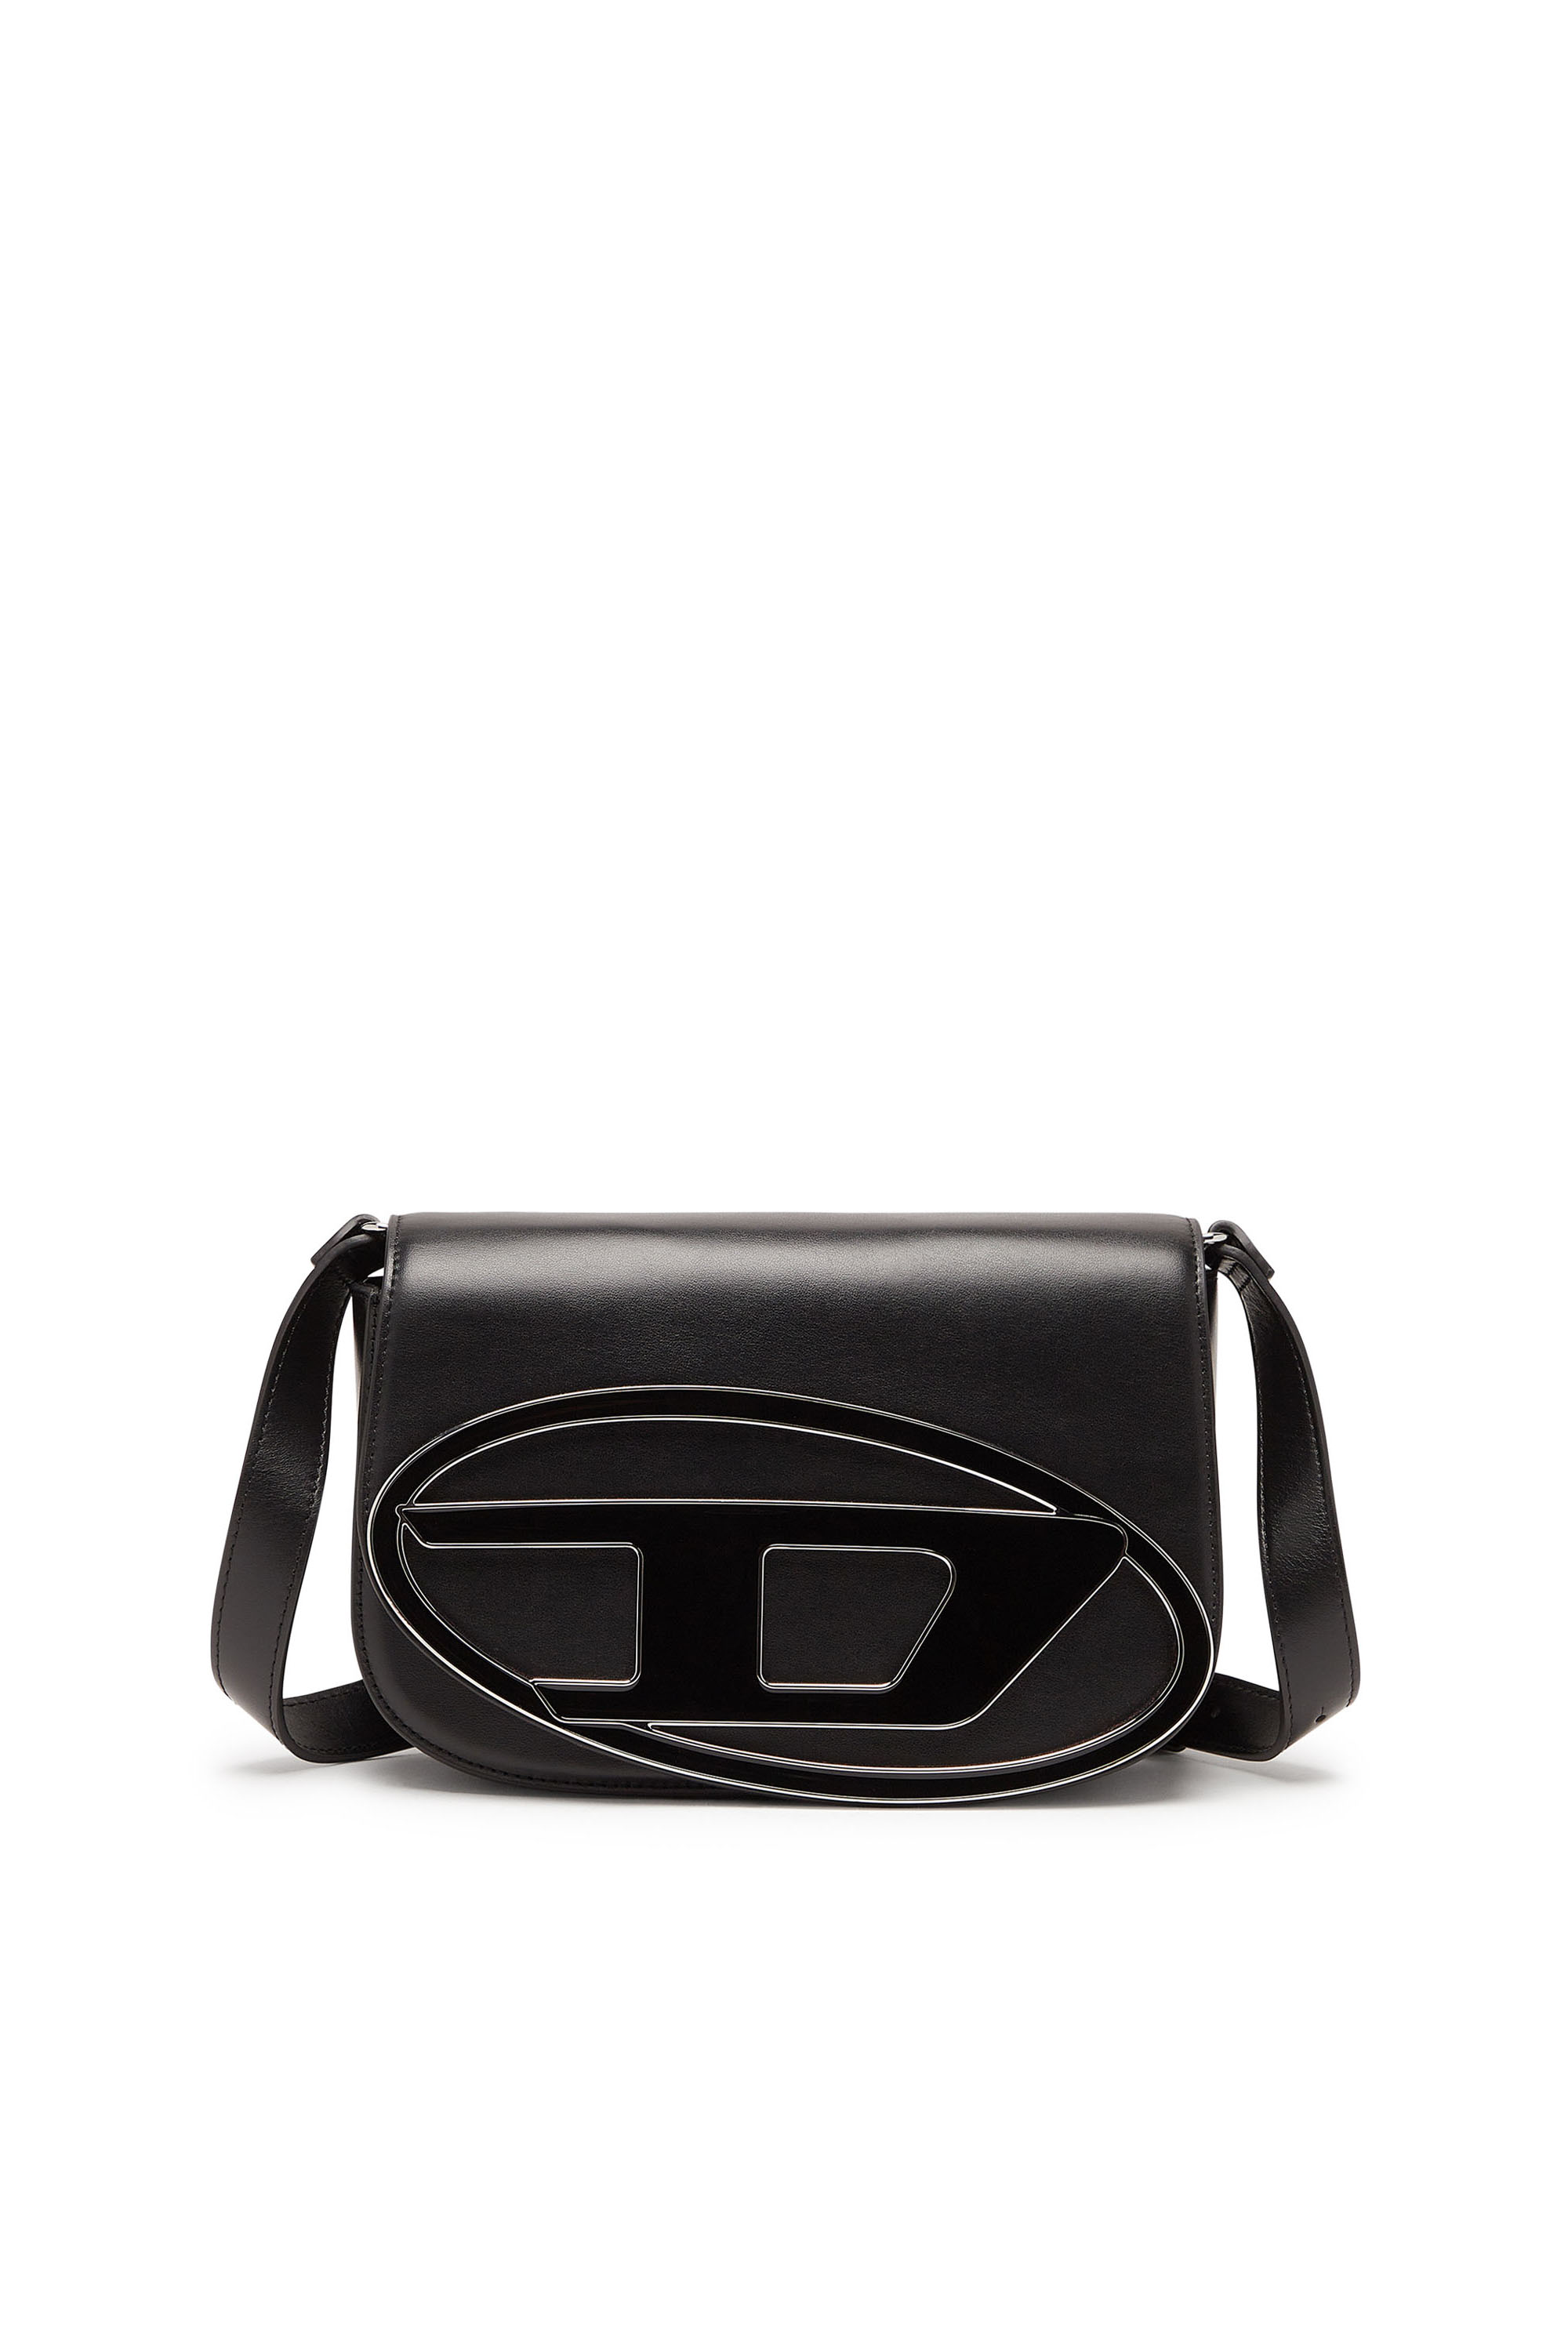 Diesel - 1DR M - Iconic medium shoulder bag in leather - Shoulder Bags - Woman - Black